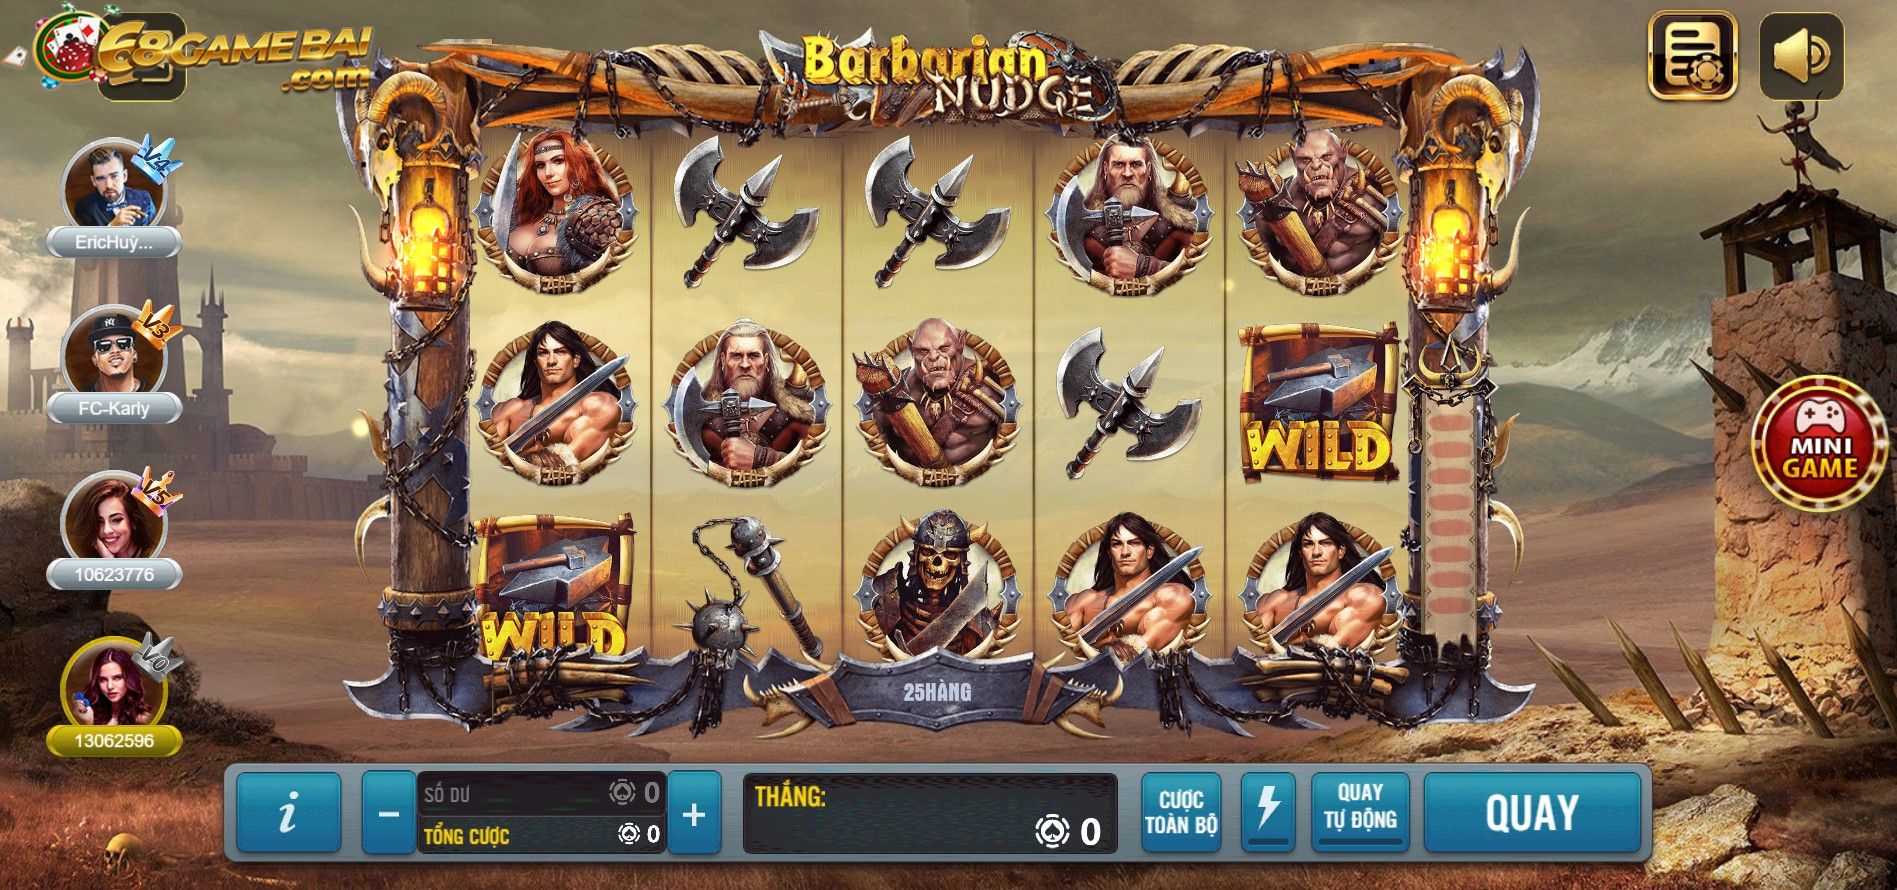 Barbarian nudge 68gamebai - Game nổ hũ hấp dẫn hàng đầu